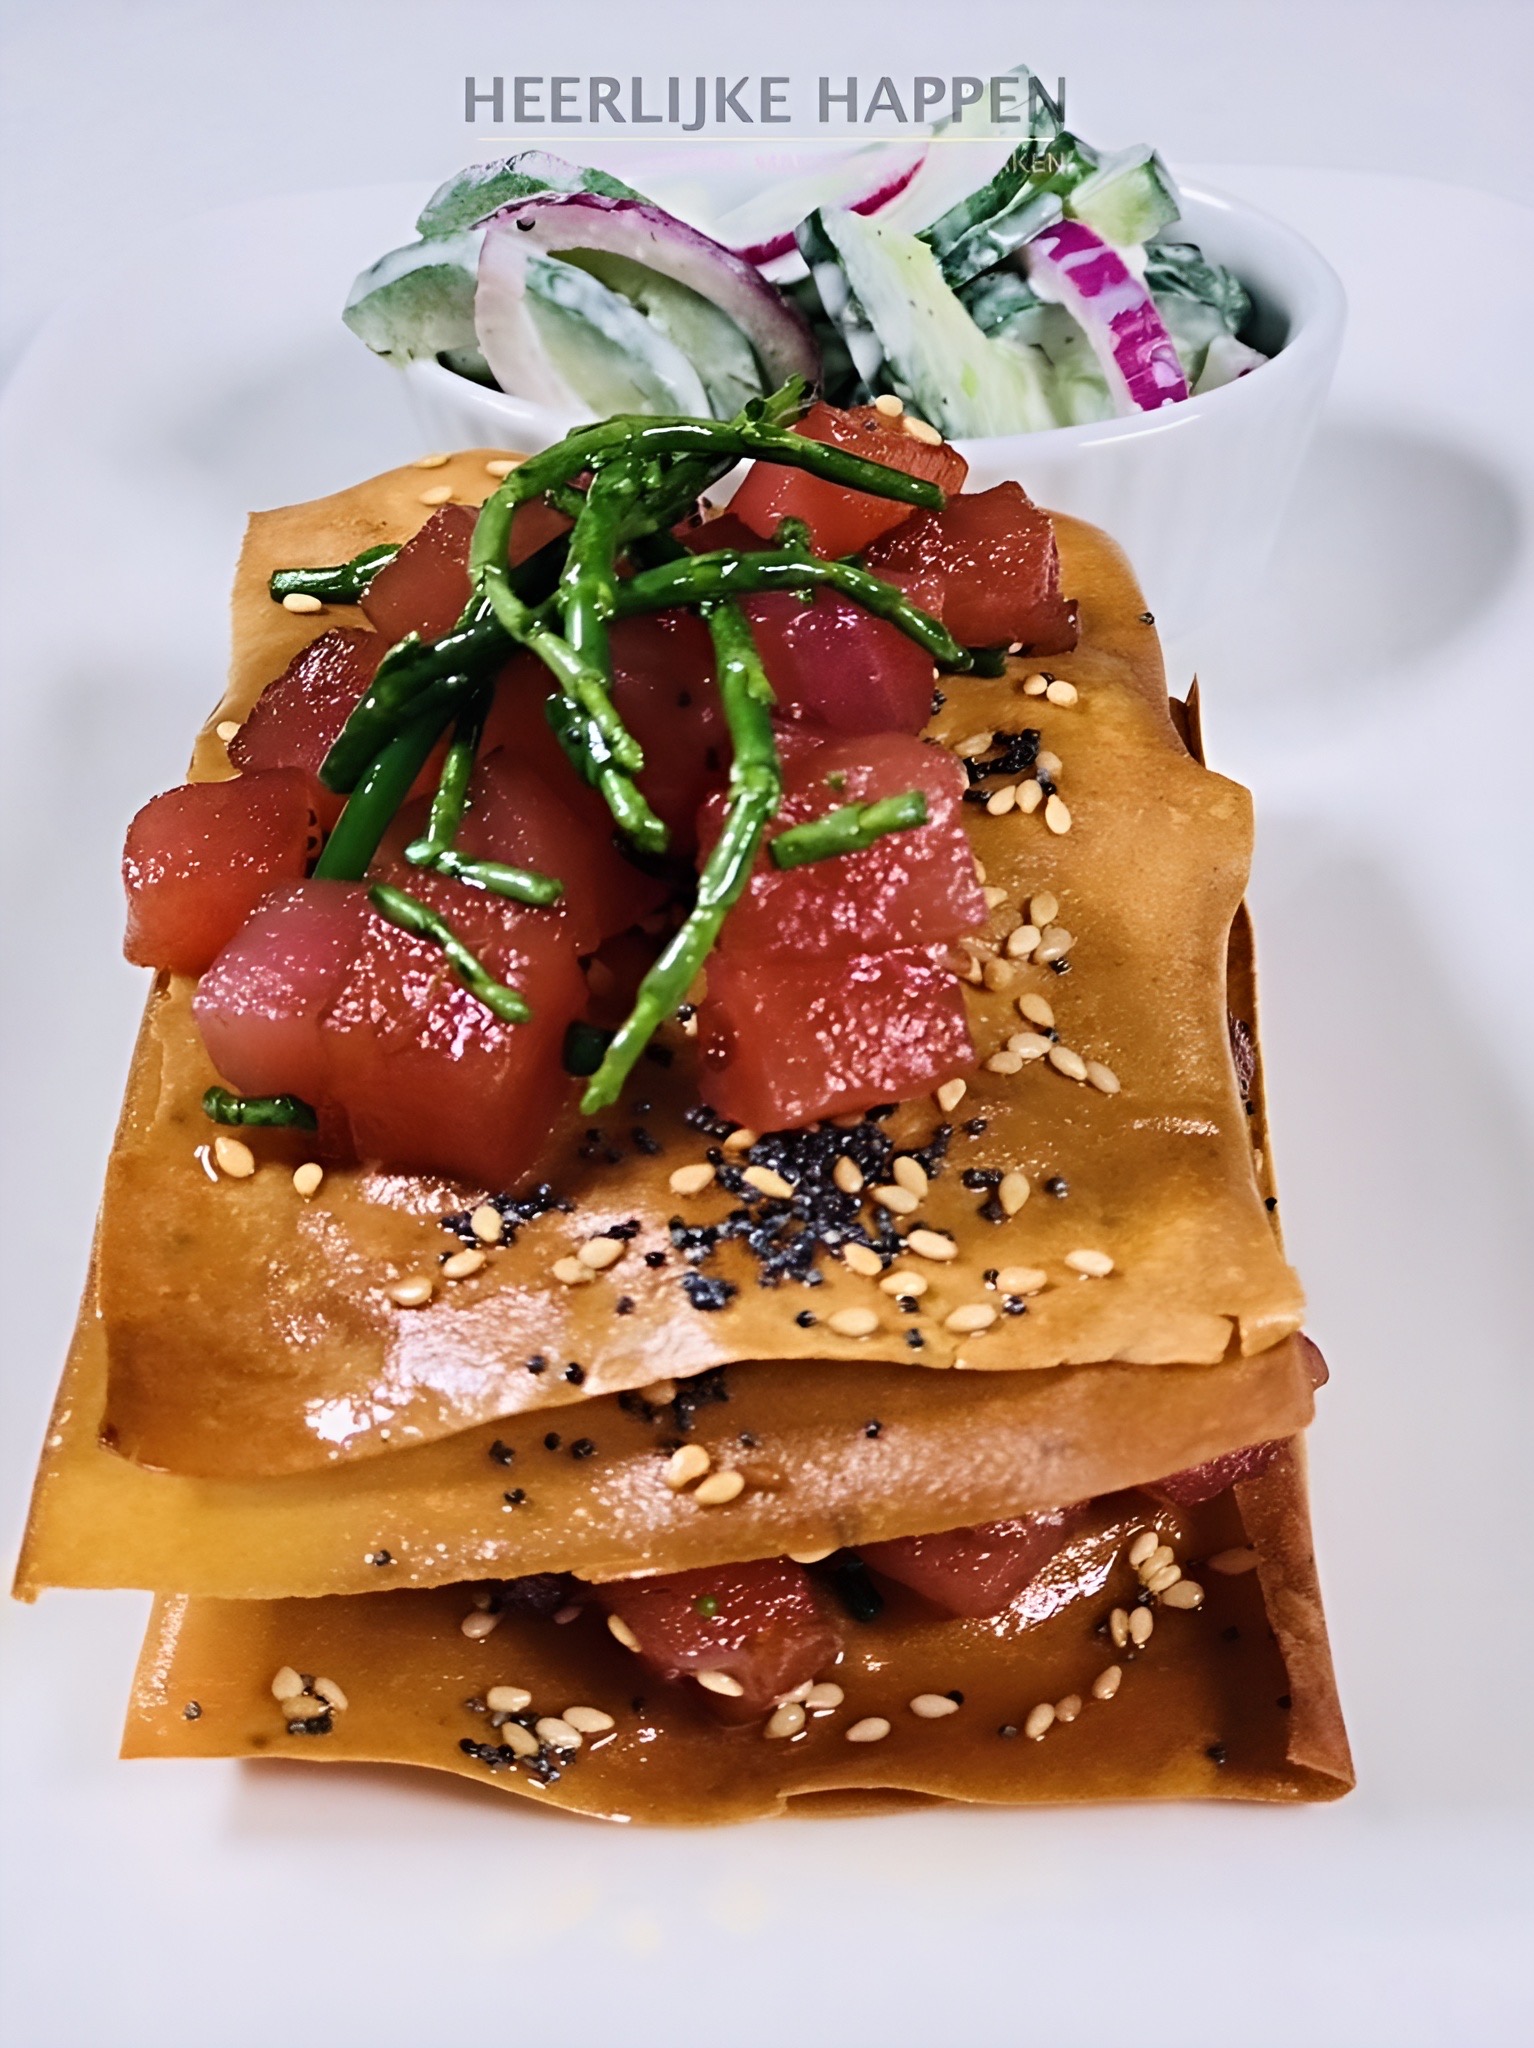 Tonijn torentje met komkommersalade
tonijntartaar japans	